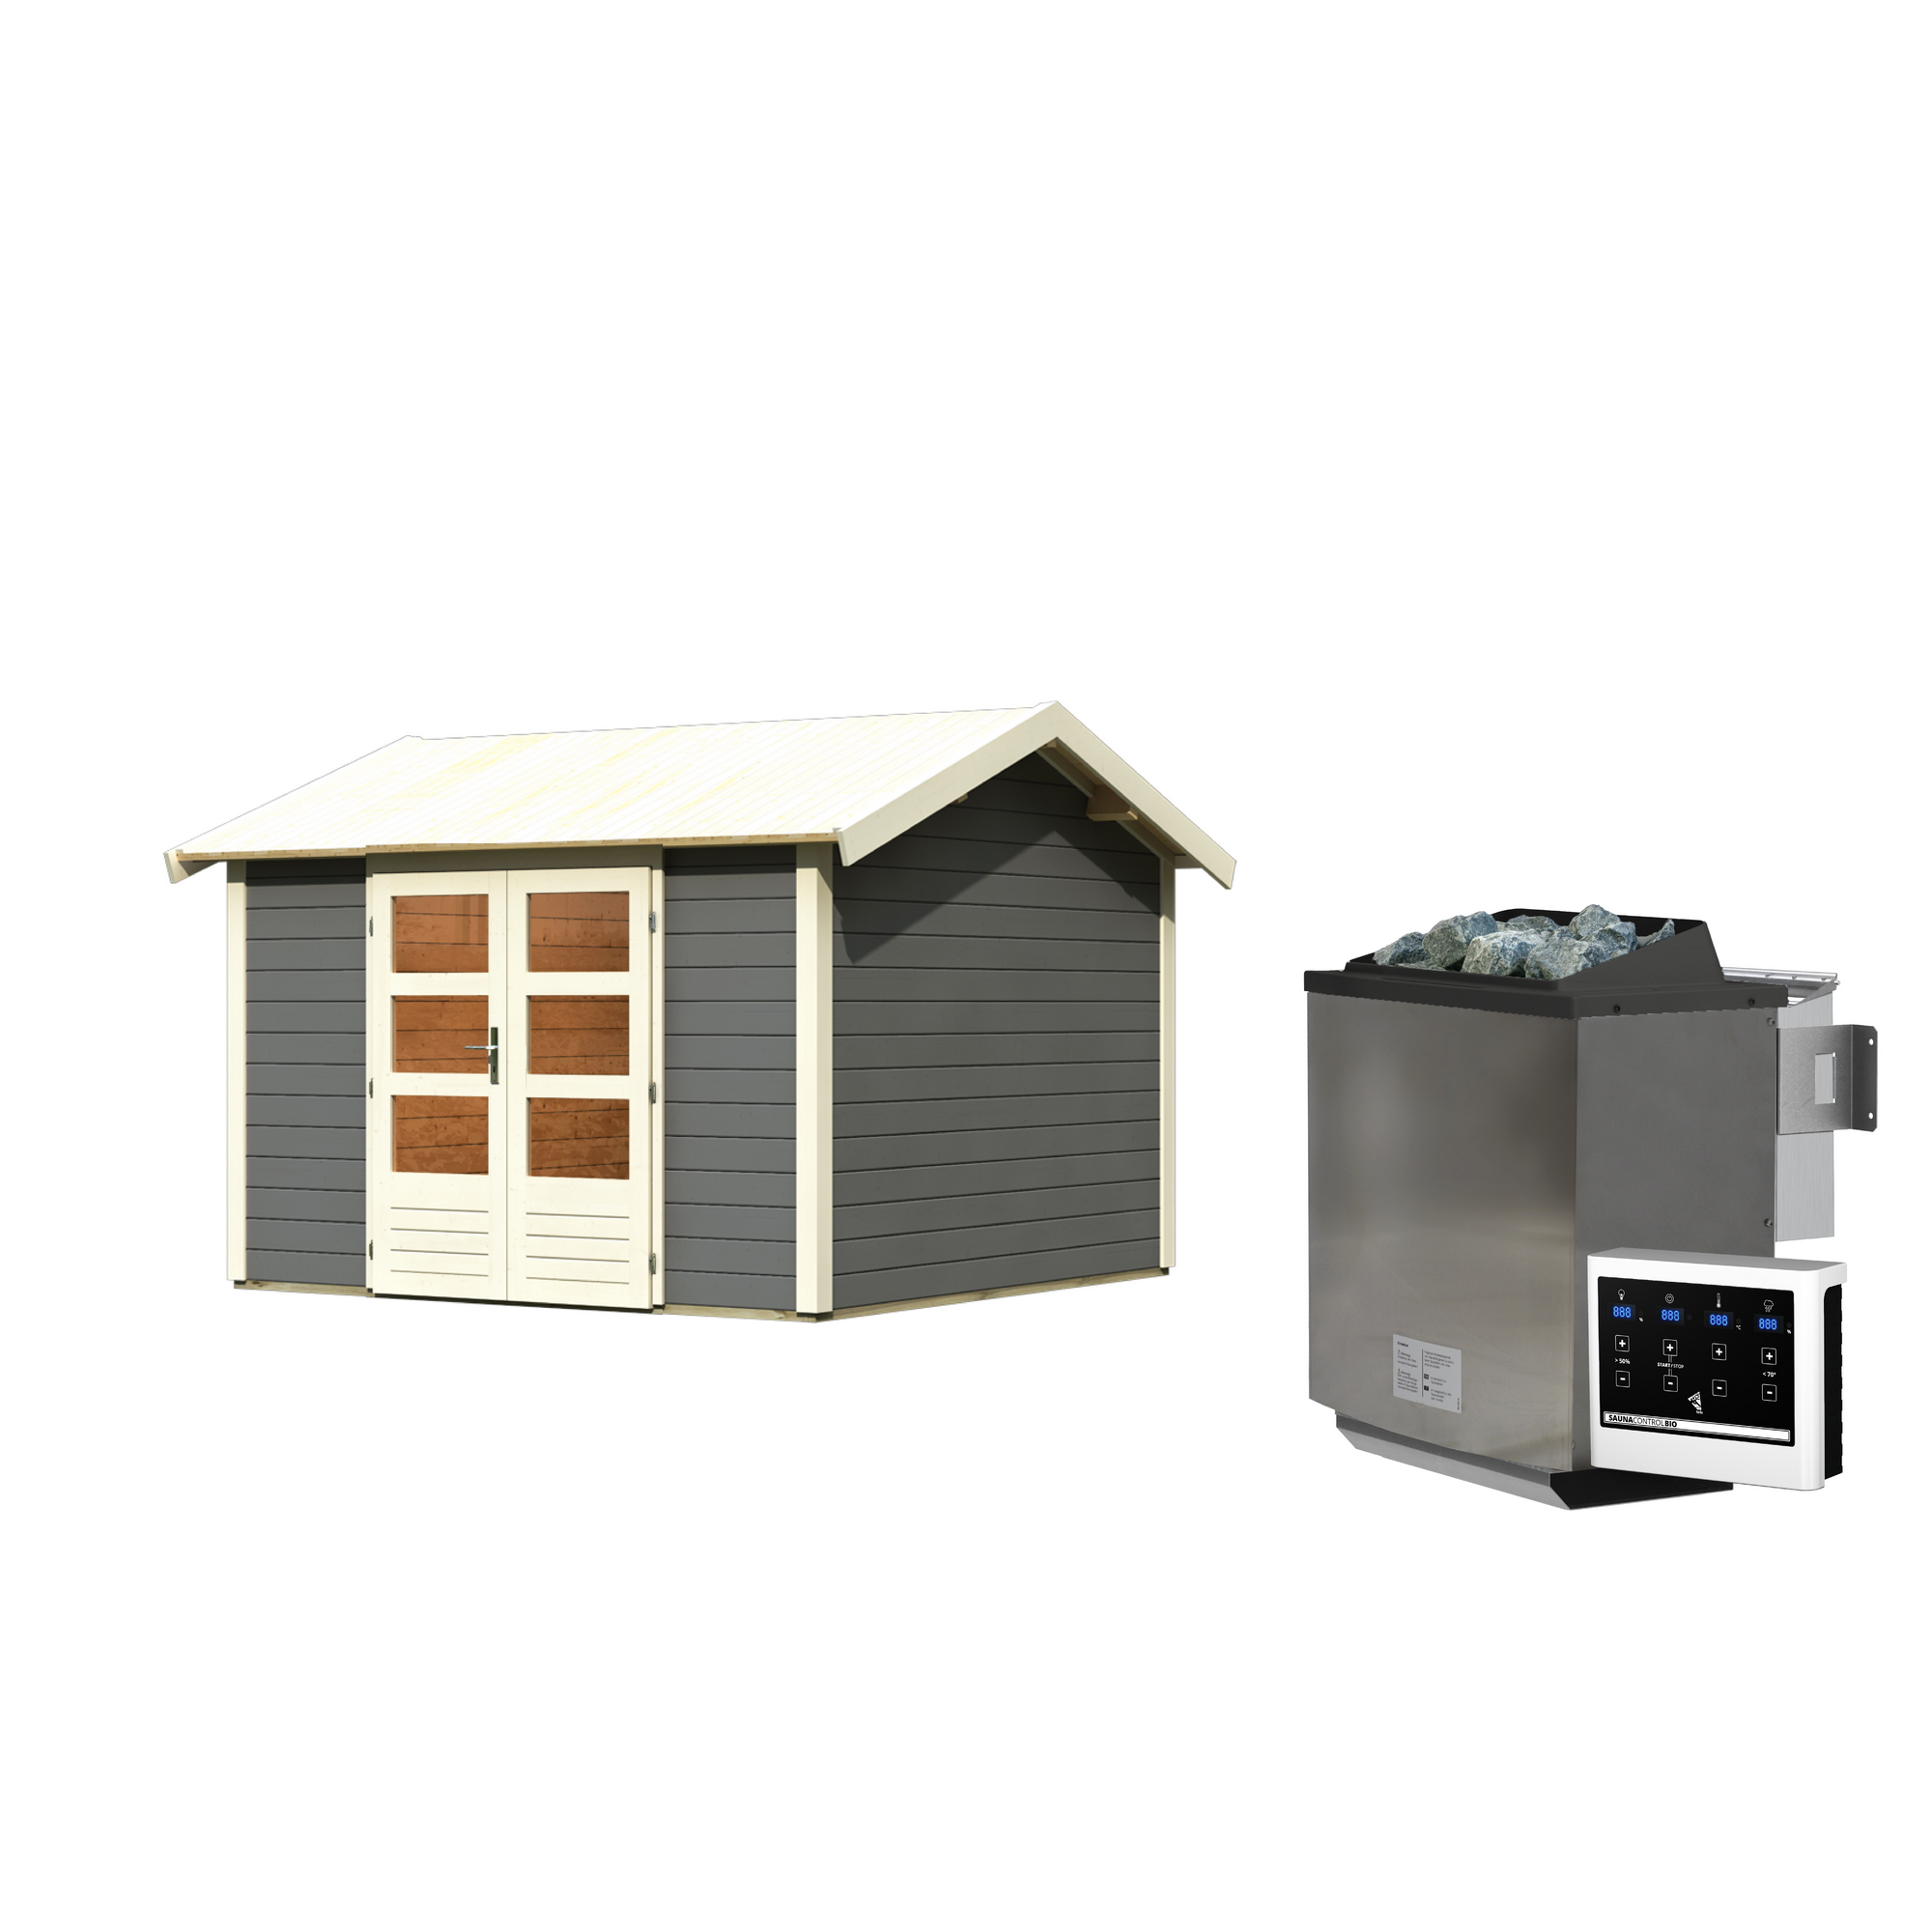 Gartenhaus mit Sauna 'Alejandro' terragrau 9 kW Bio-Ofen externe Steuerung 304 x 304 x 250 cm + product picture